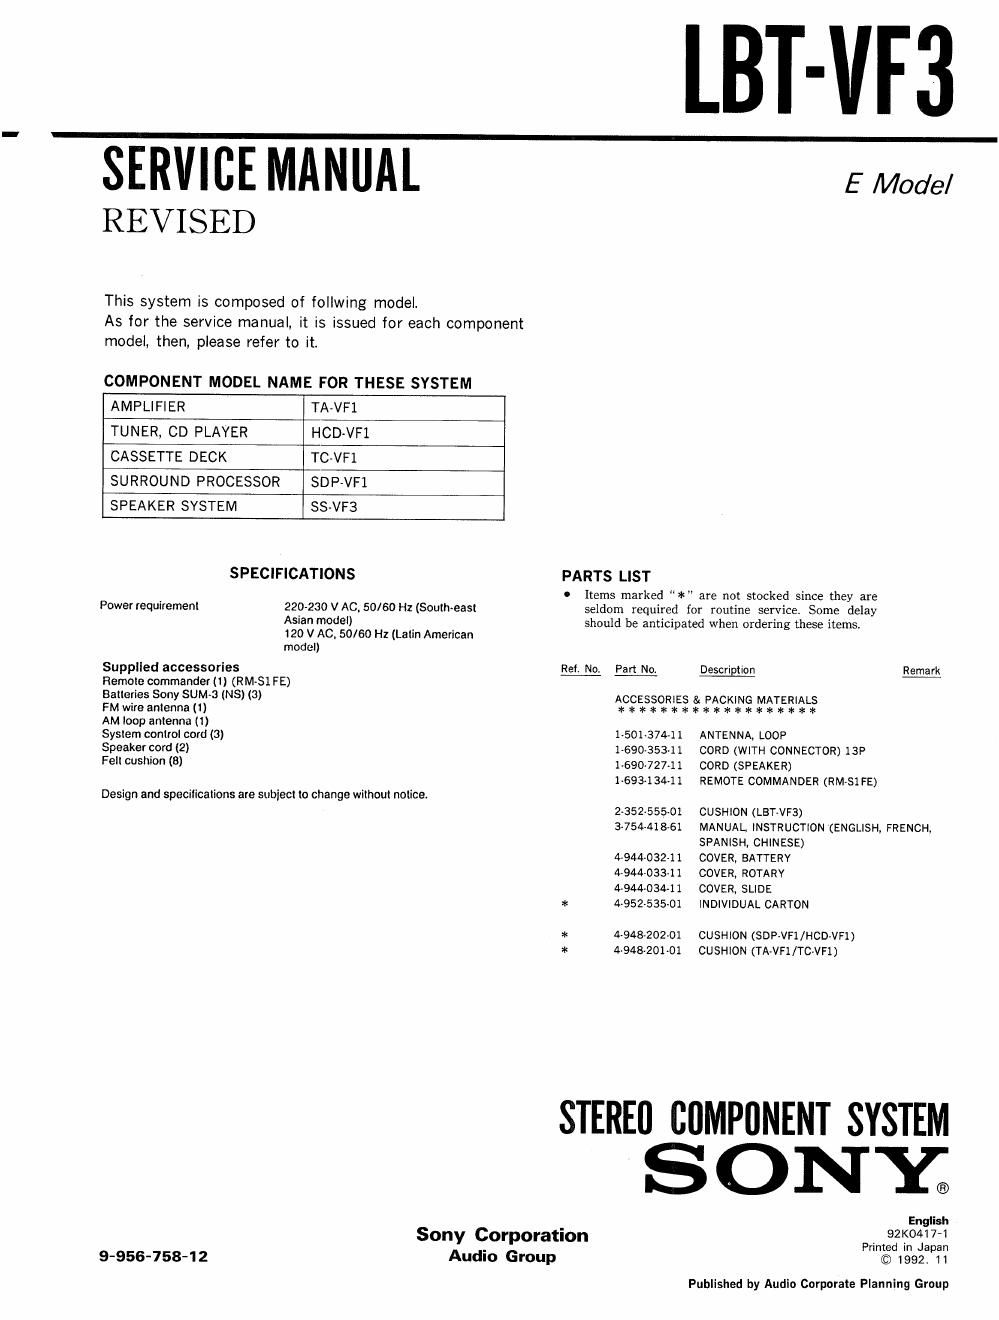 sony lbt vf 3 service manual